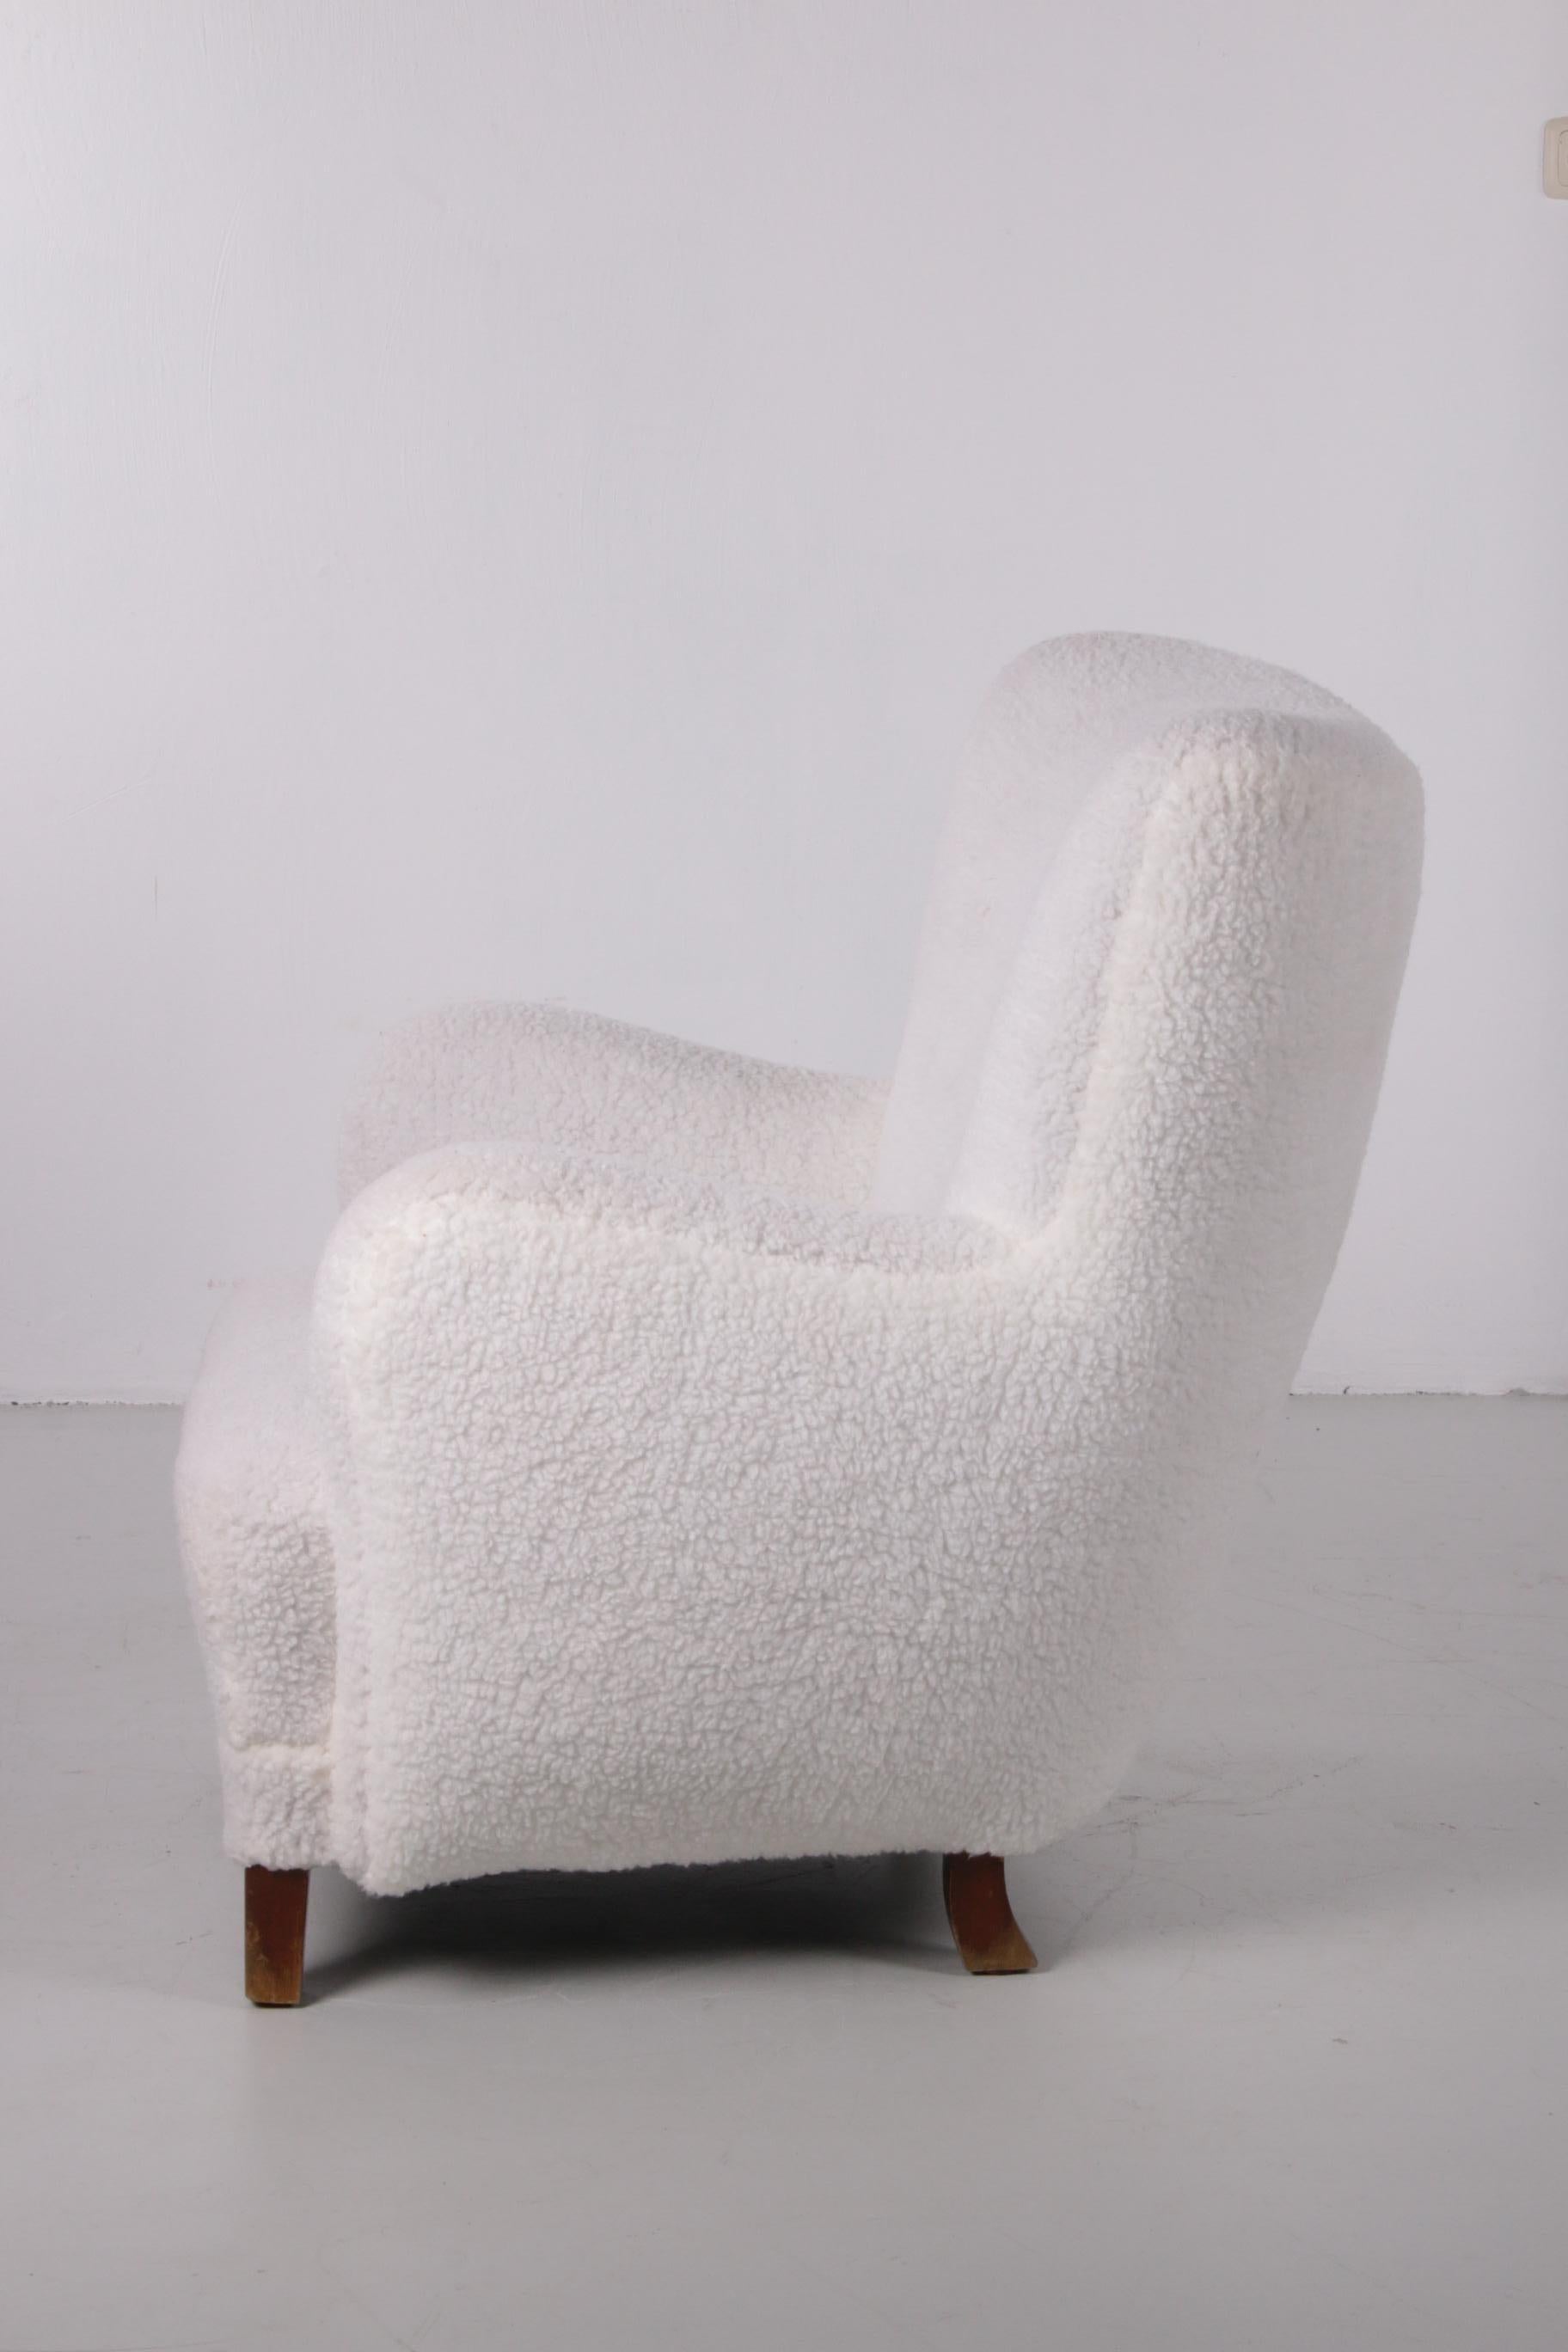 Fritz Hansen High Back Lounge Chair, Model 1669, Denmark, 1950 1